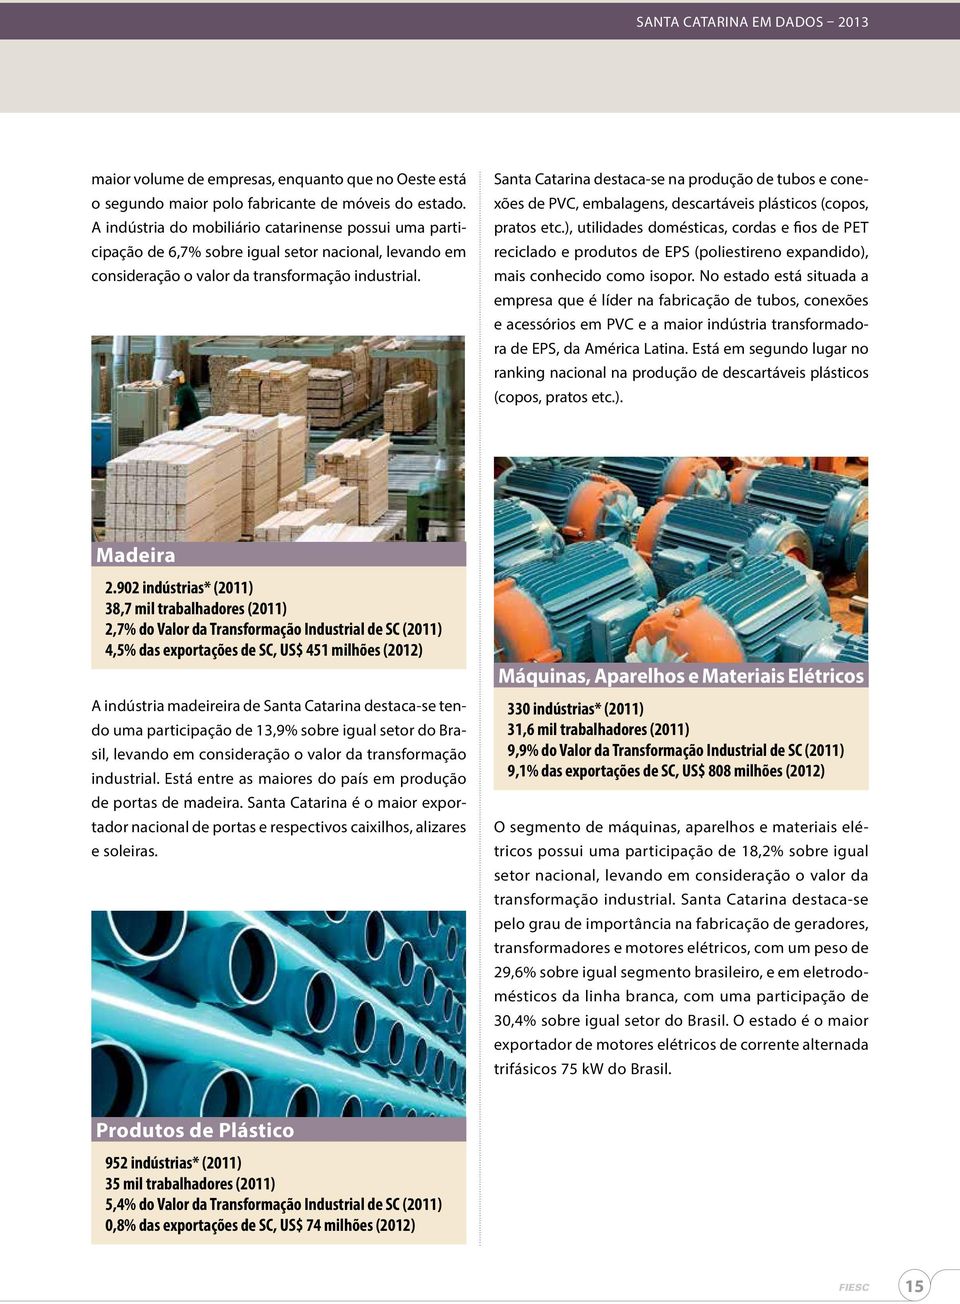 Santa Catarina destaca-se na produção de tubos e conexões de PVC, embalagens, descartáveis plásticos (copos, pratos etc.